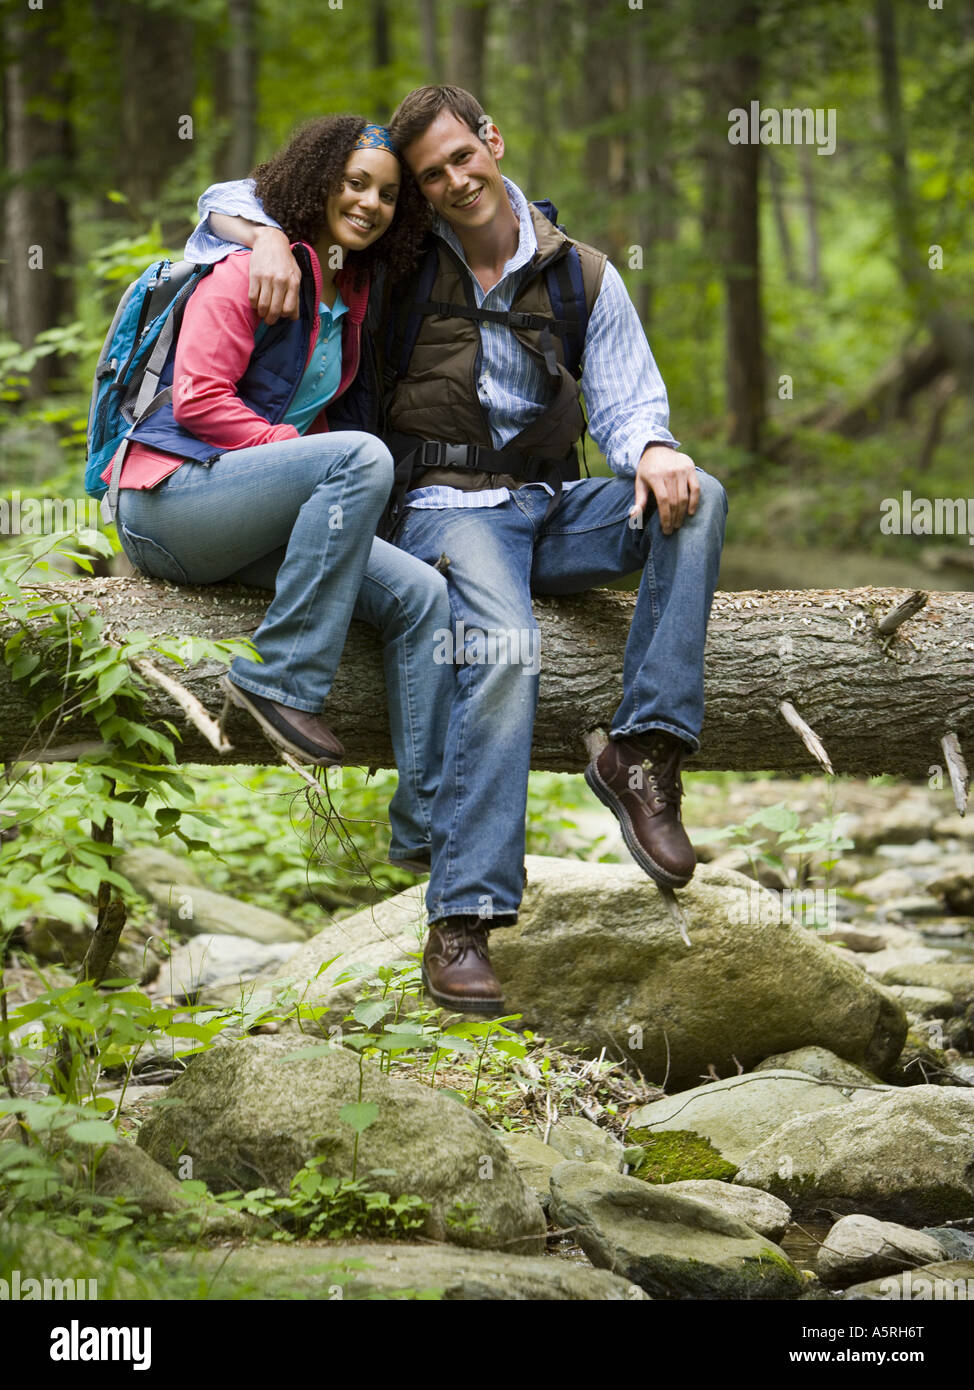 Porträt eines jungen Paares auf einen umgestürzten Baum sitzend Stockfoto